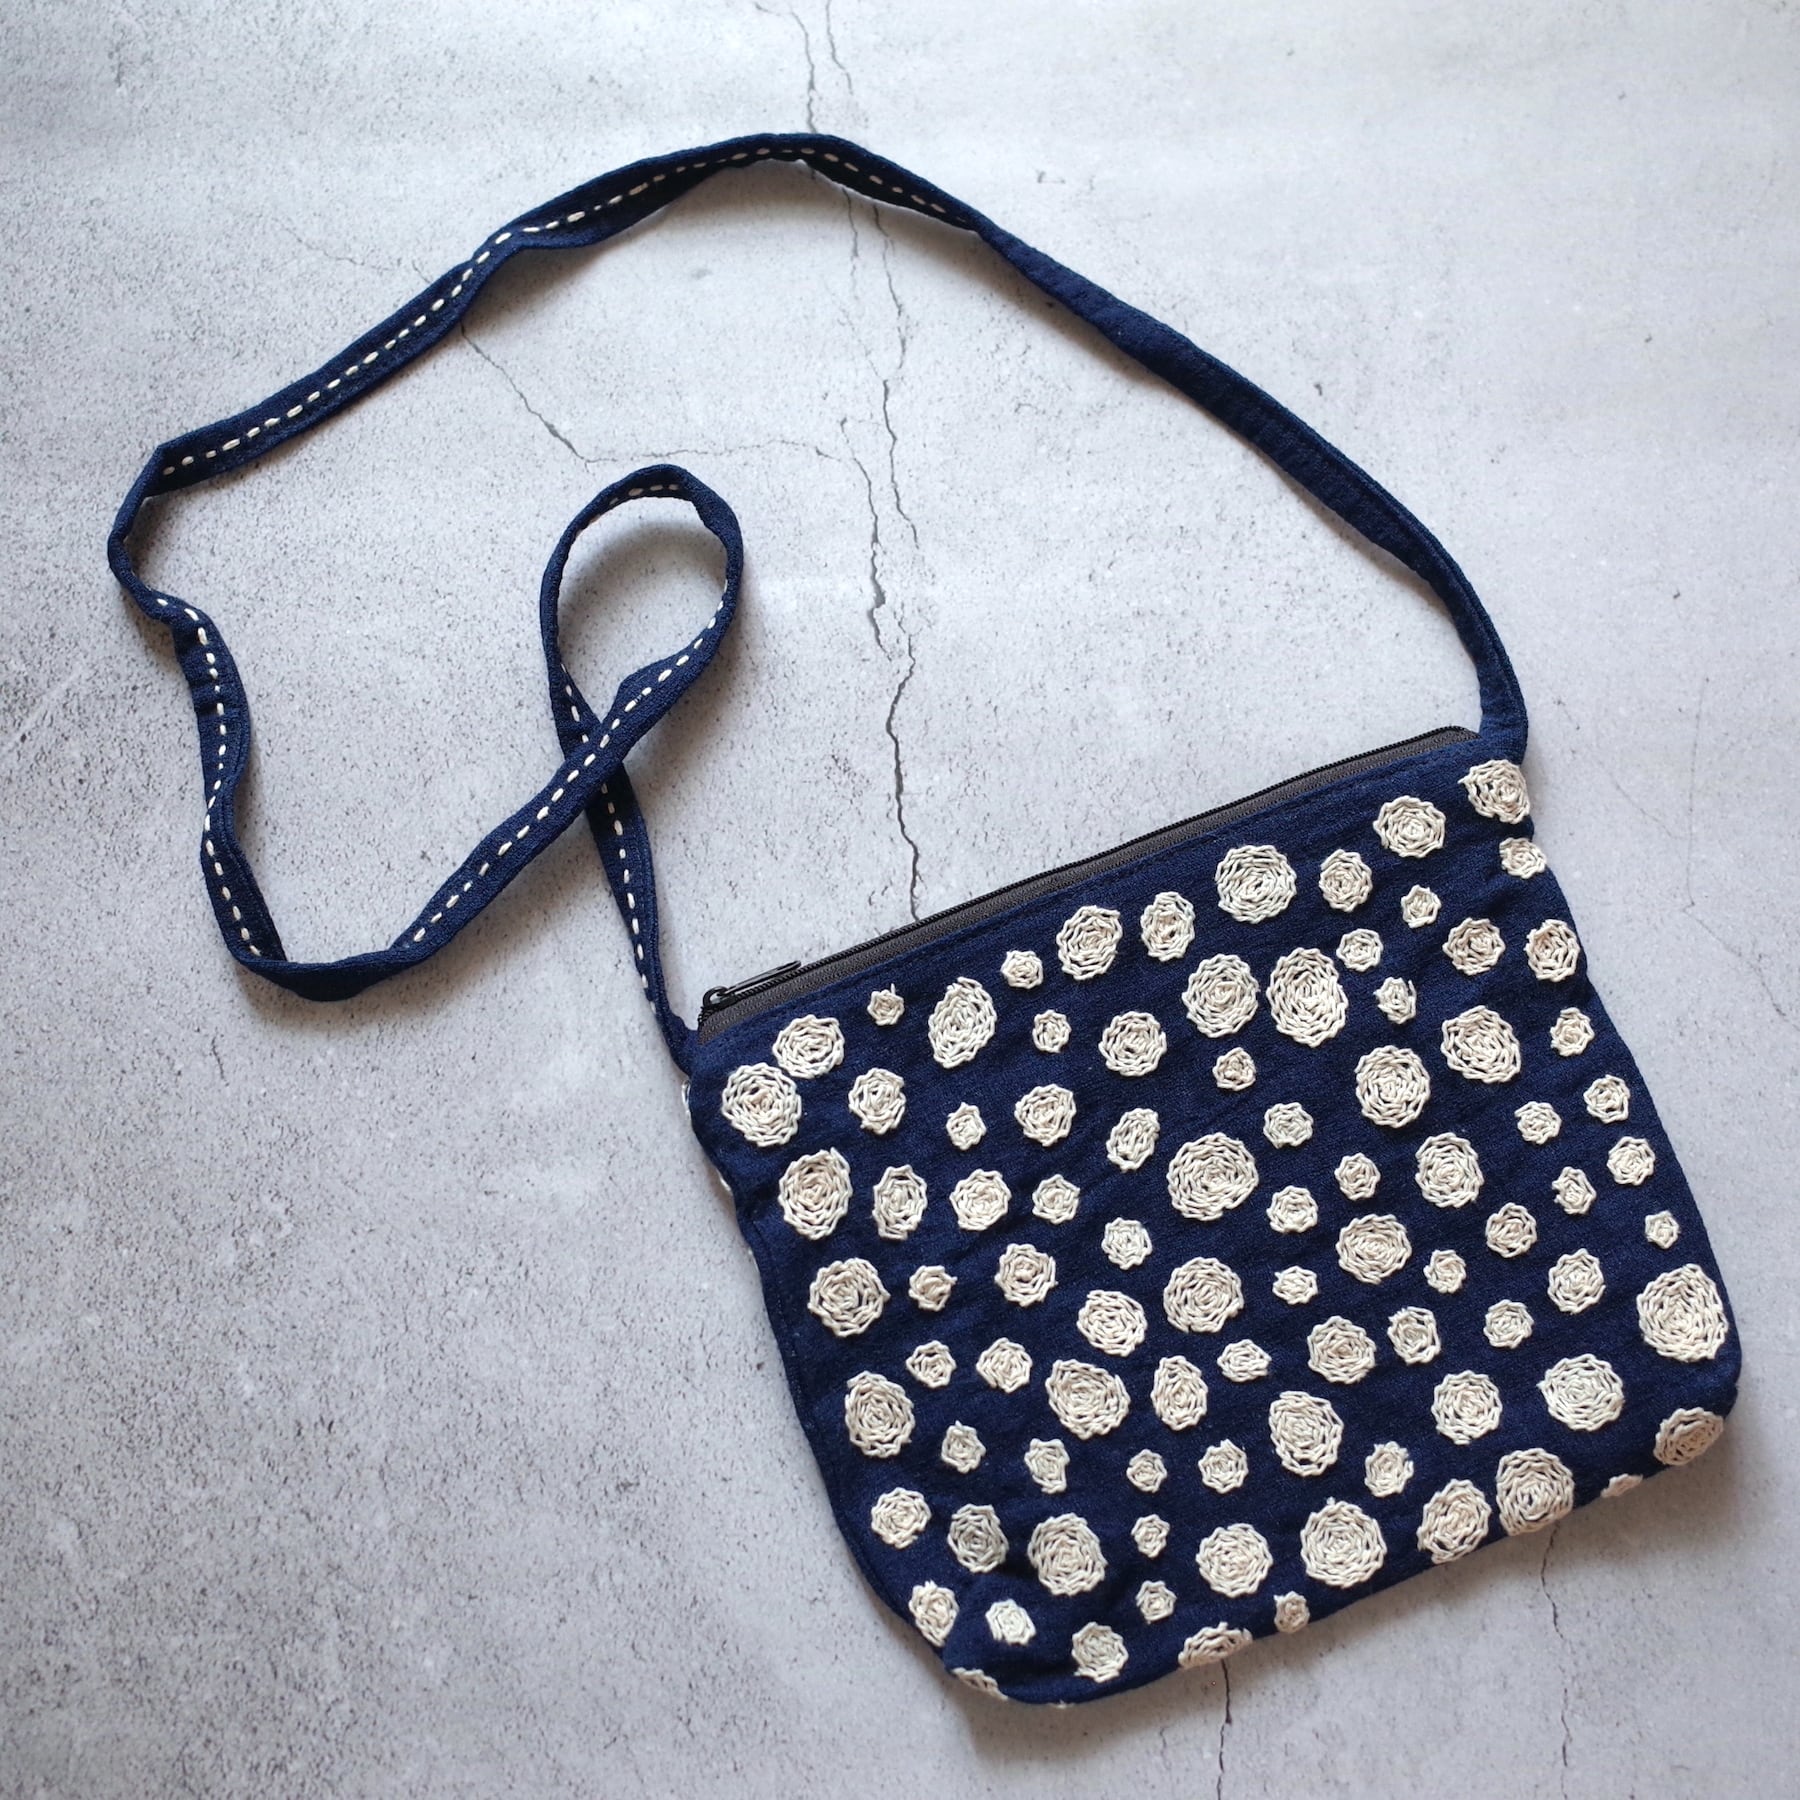 タイ 刺し子 刺繍 ショルダー バッグ #4 藍染 チェンマイ サコッシュ rihla